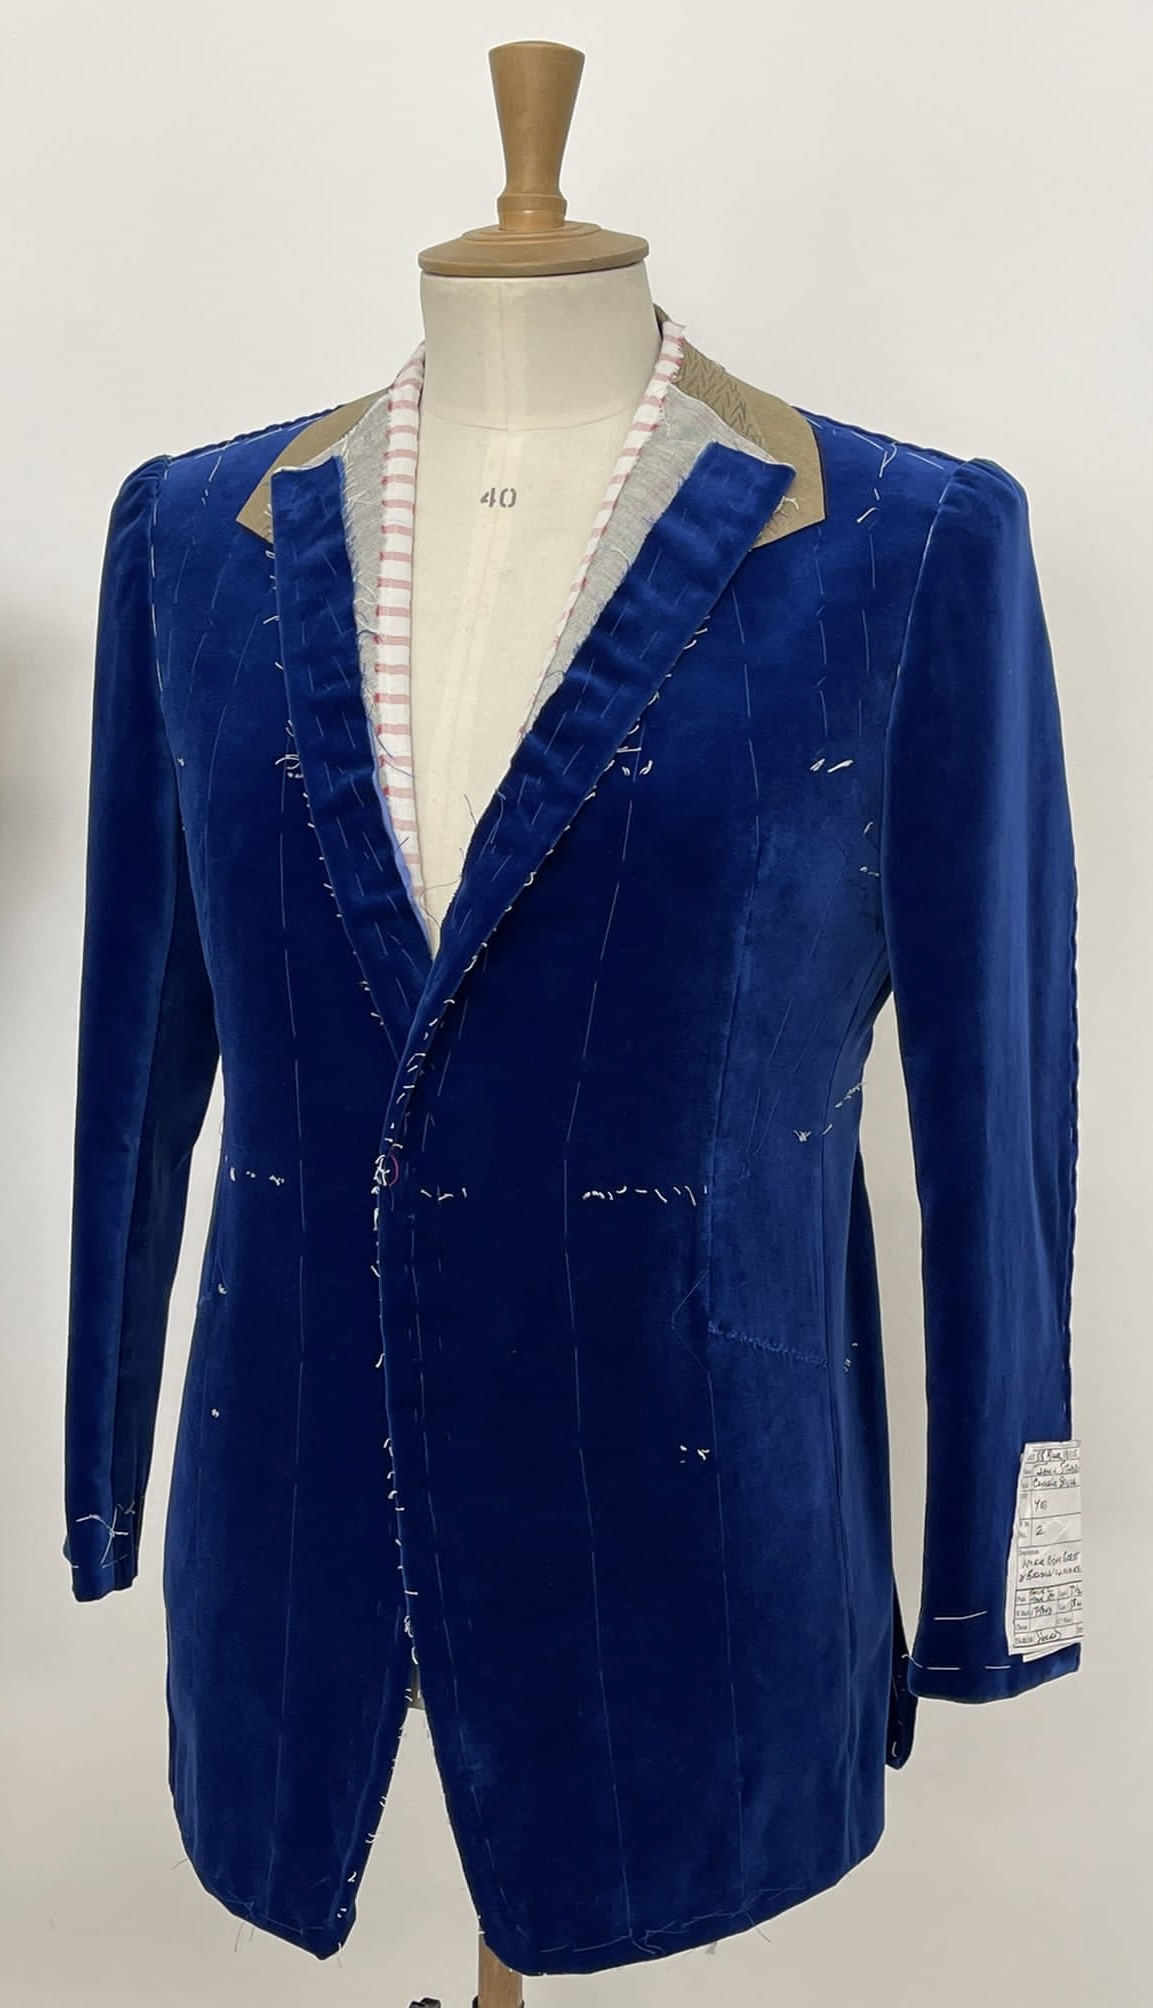 Andrew Black Blue Velvet Suit